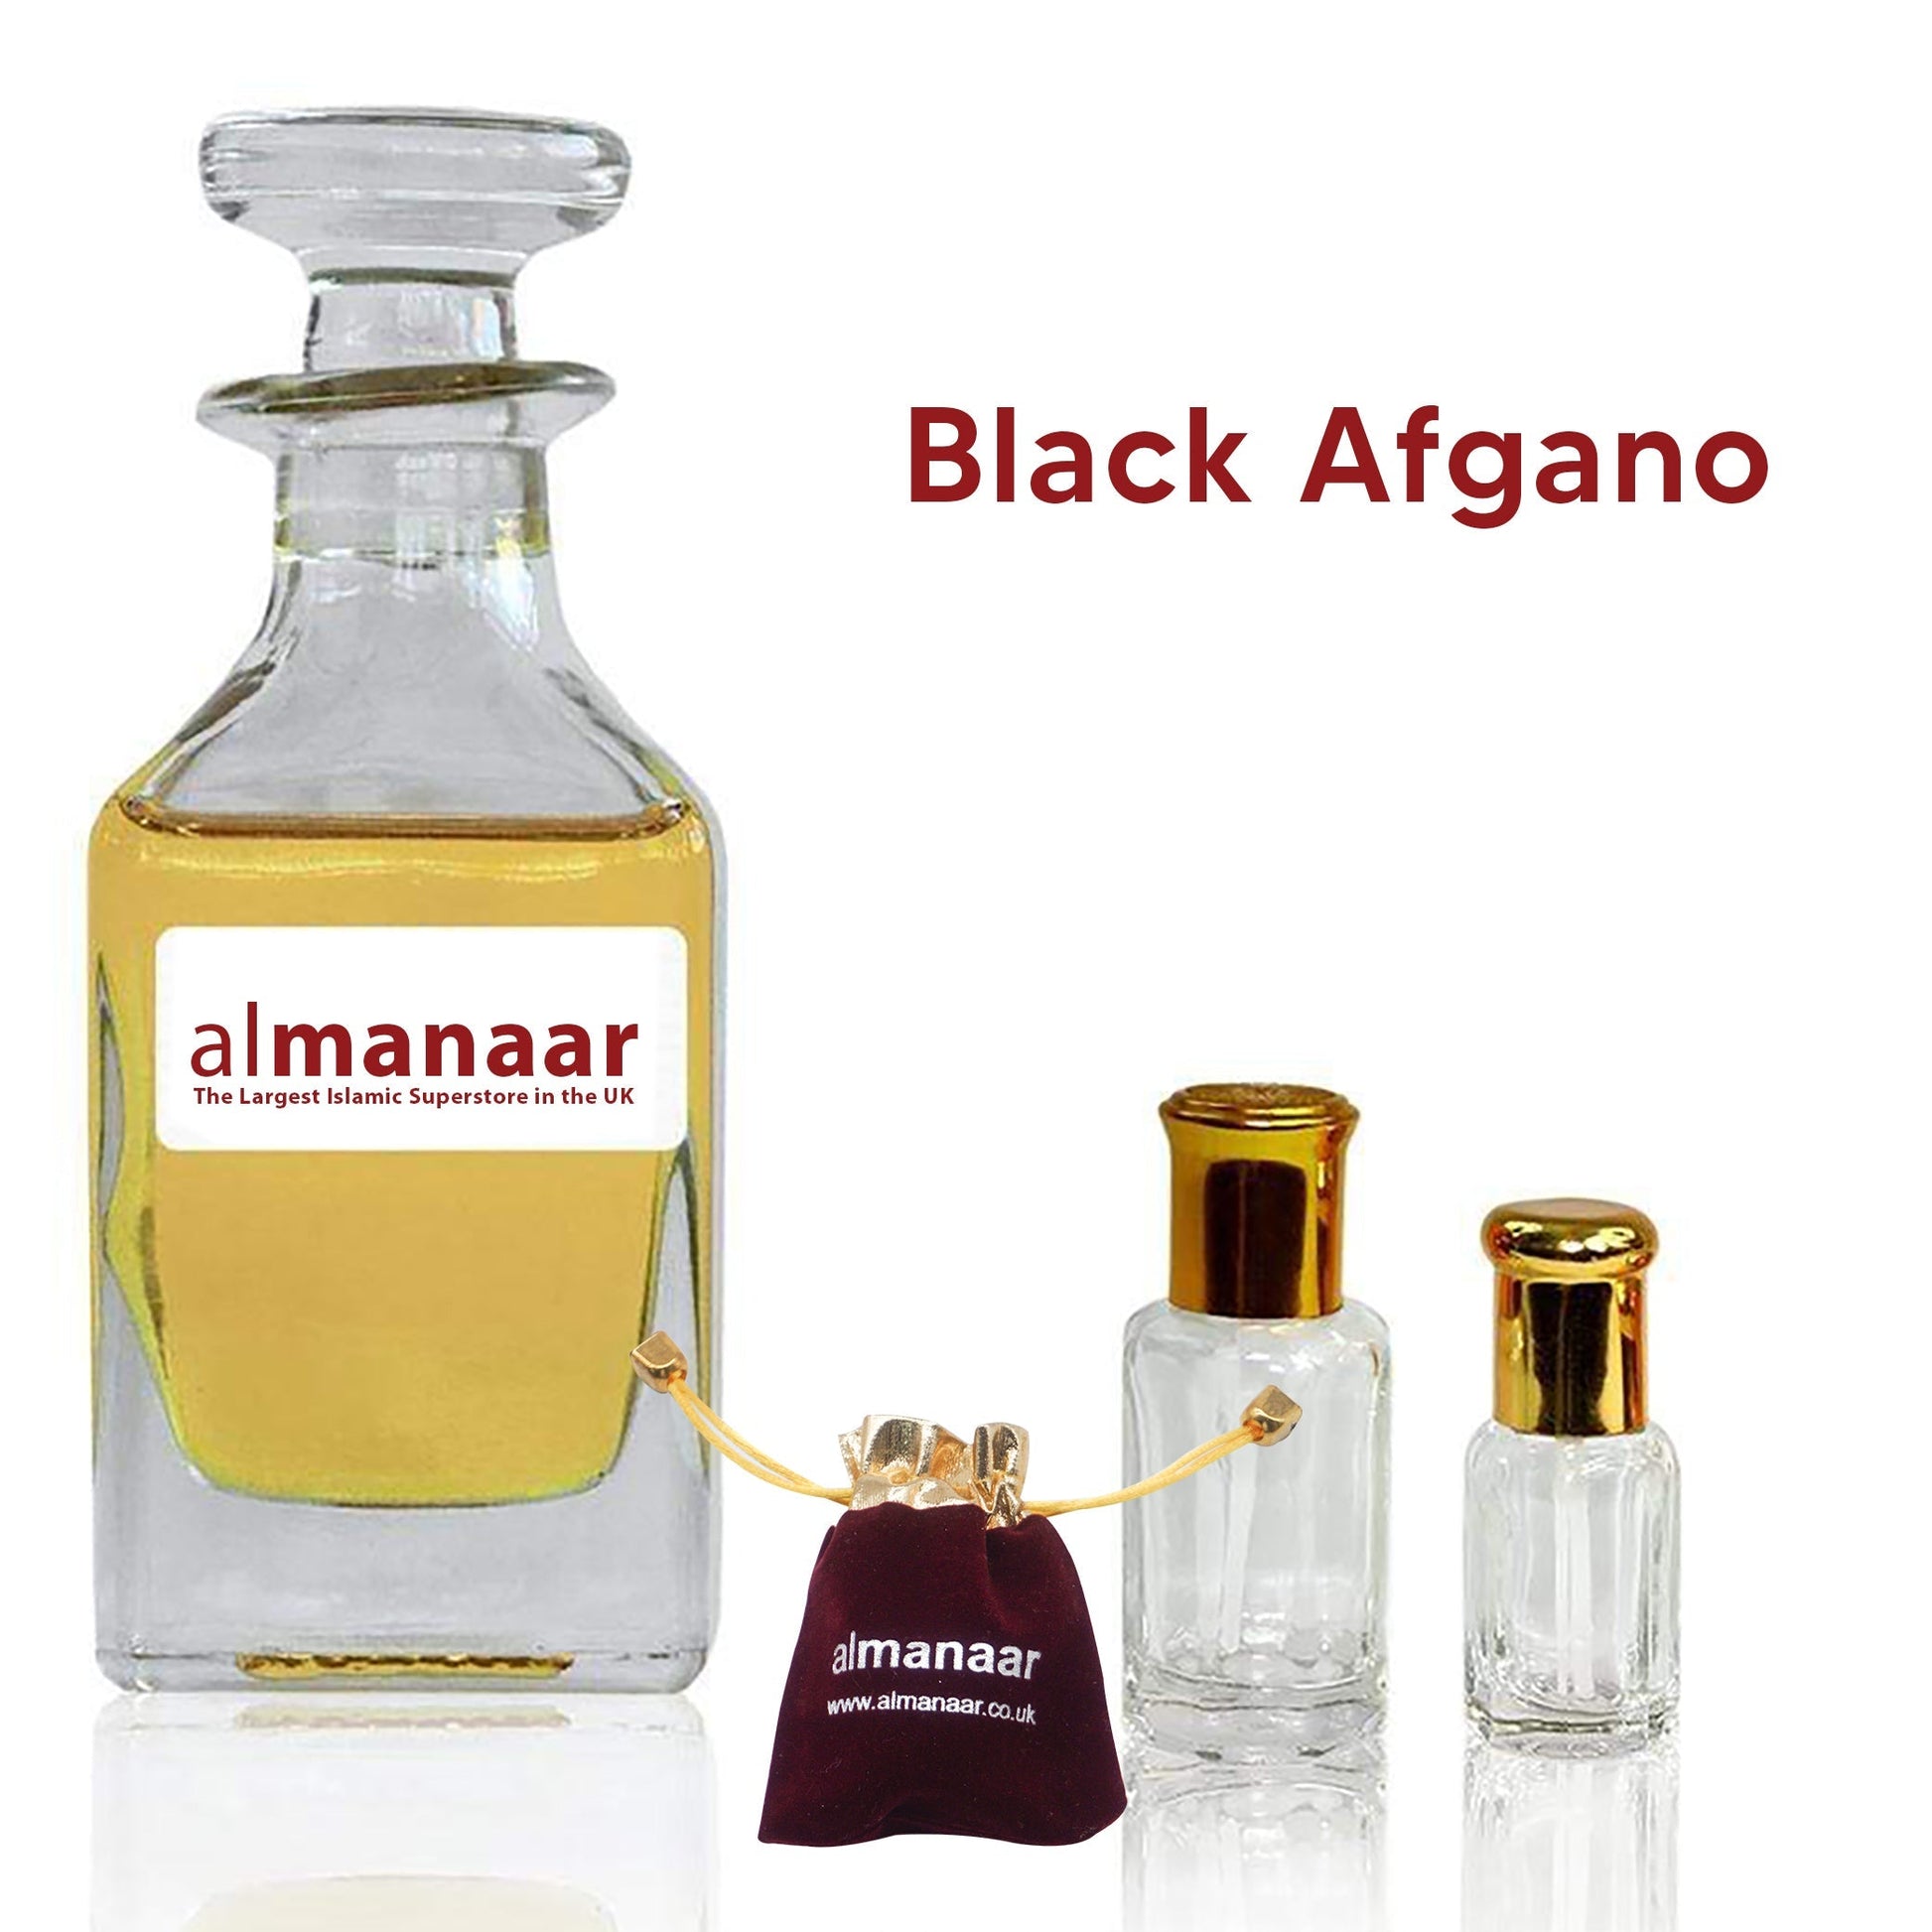 Black Afgano - Concentrated Perfume Oil by almanaar-almanaar Islamic Store